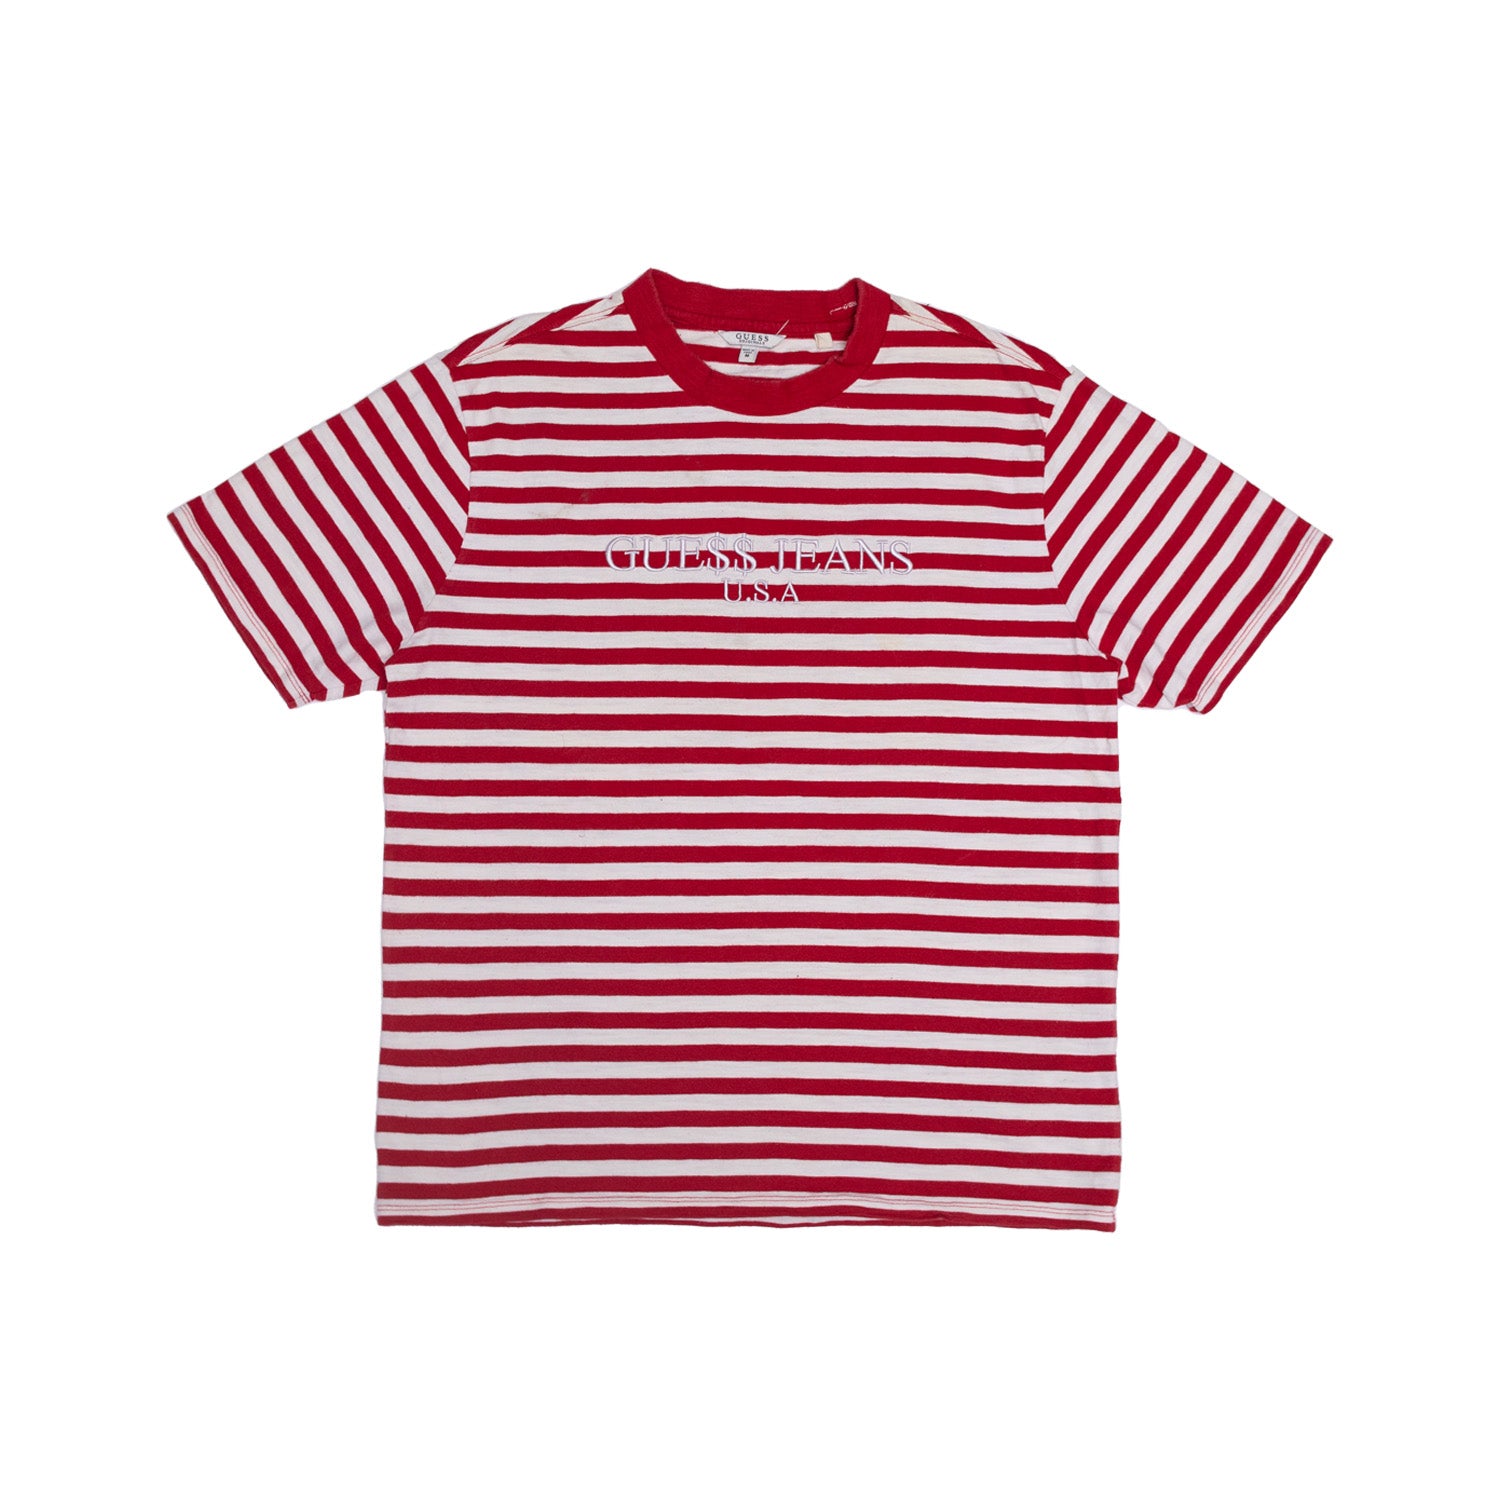 A$AP Rocky x Guess Collab T-Shirt - Red/White – bajj® Studio